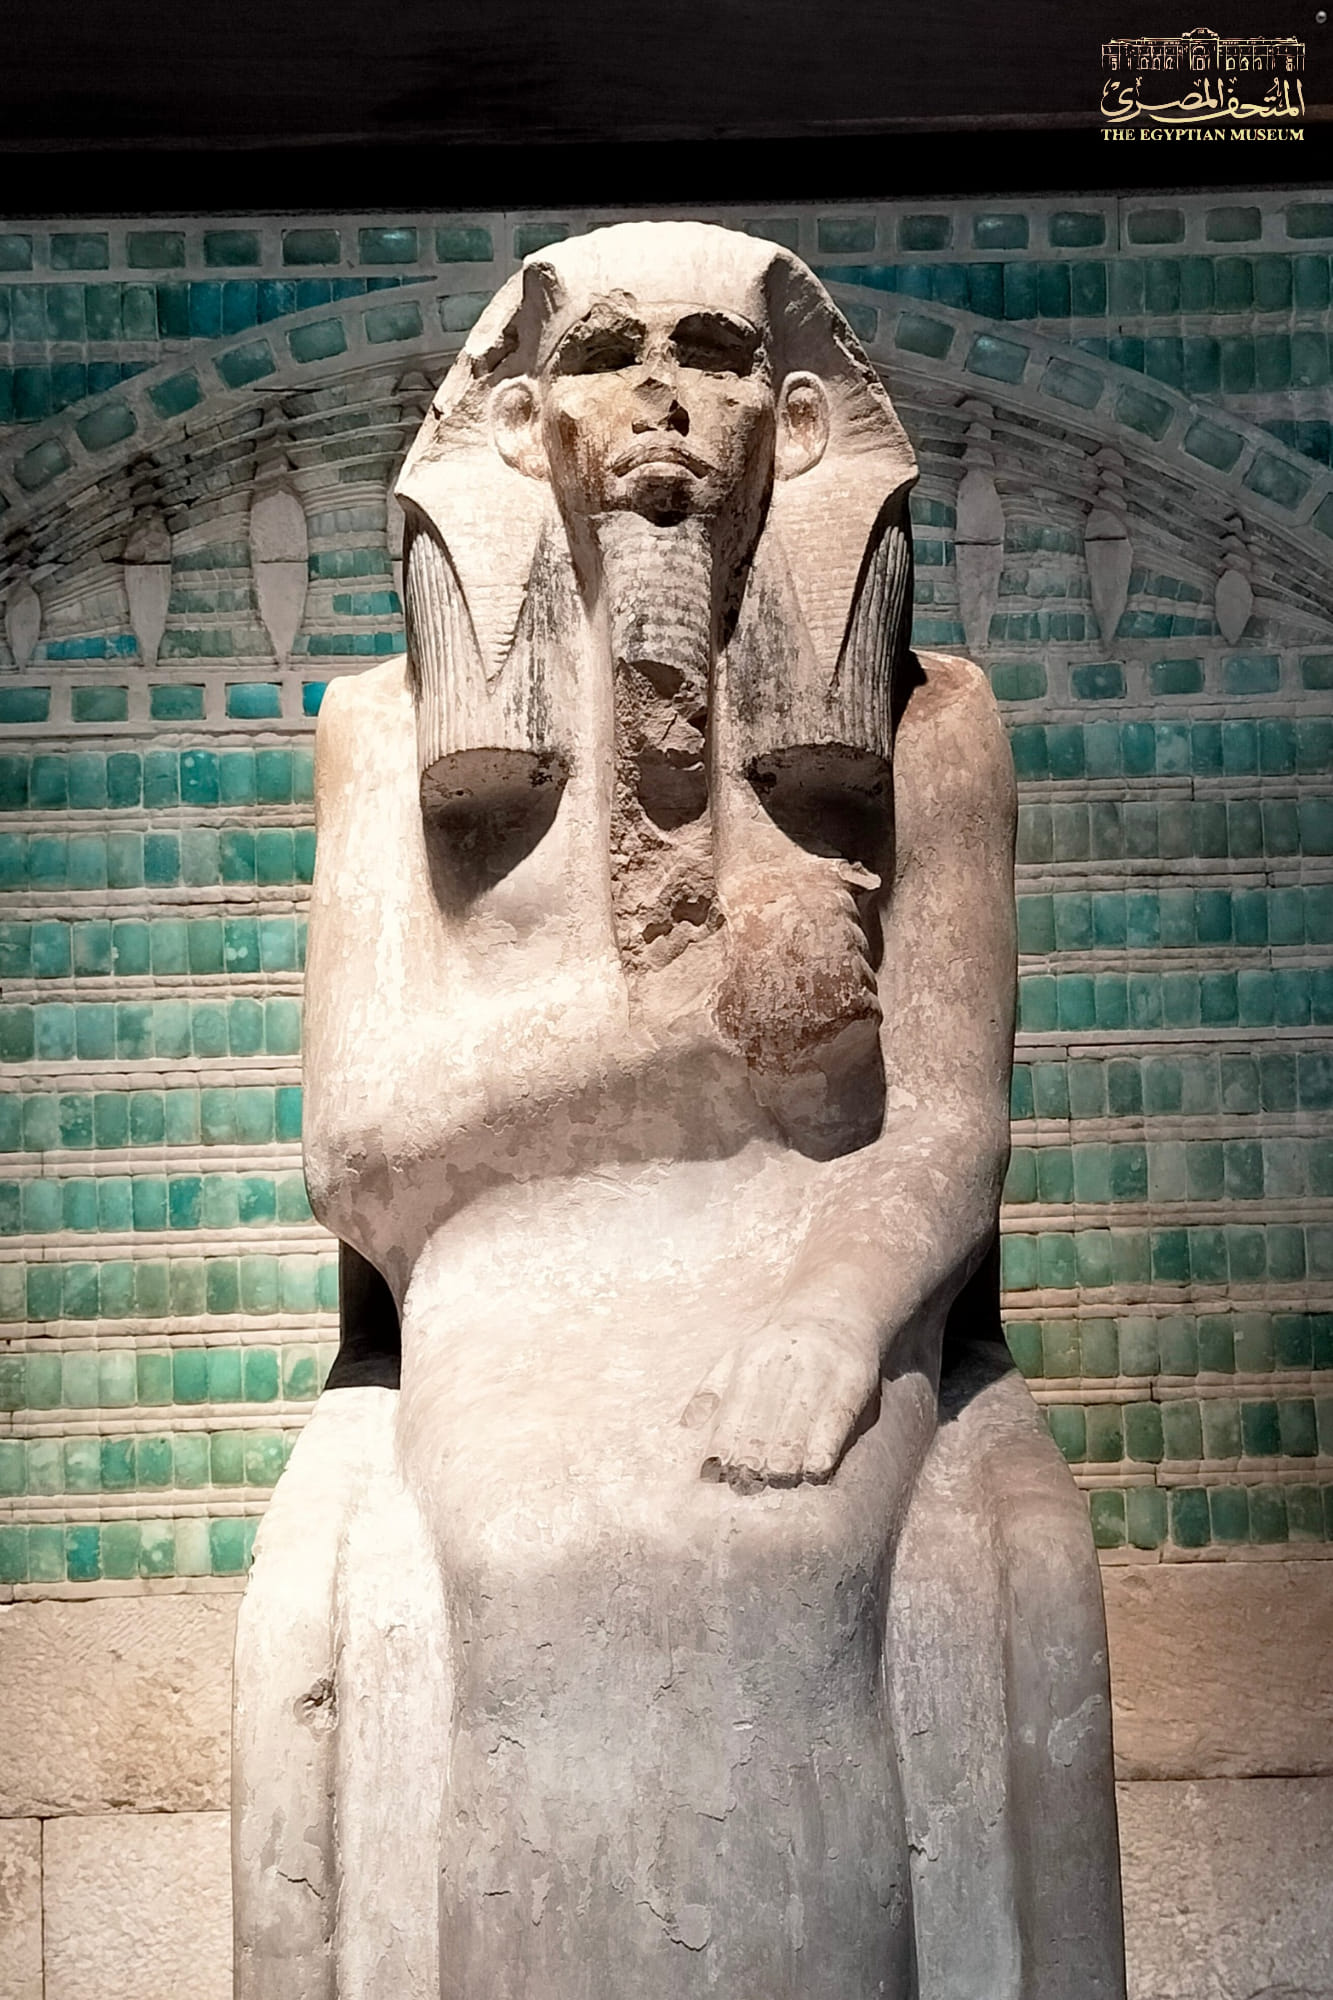 شاهد تمثال الملك زوسر من مقتنيات المتحف المصري